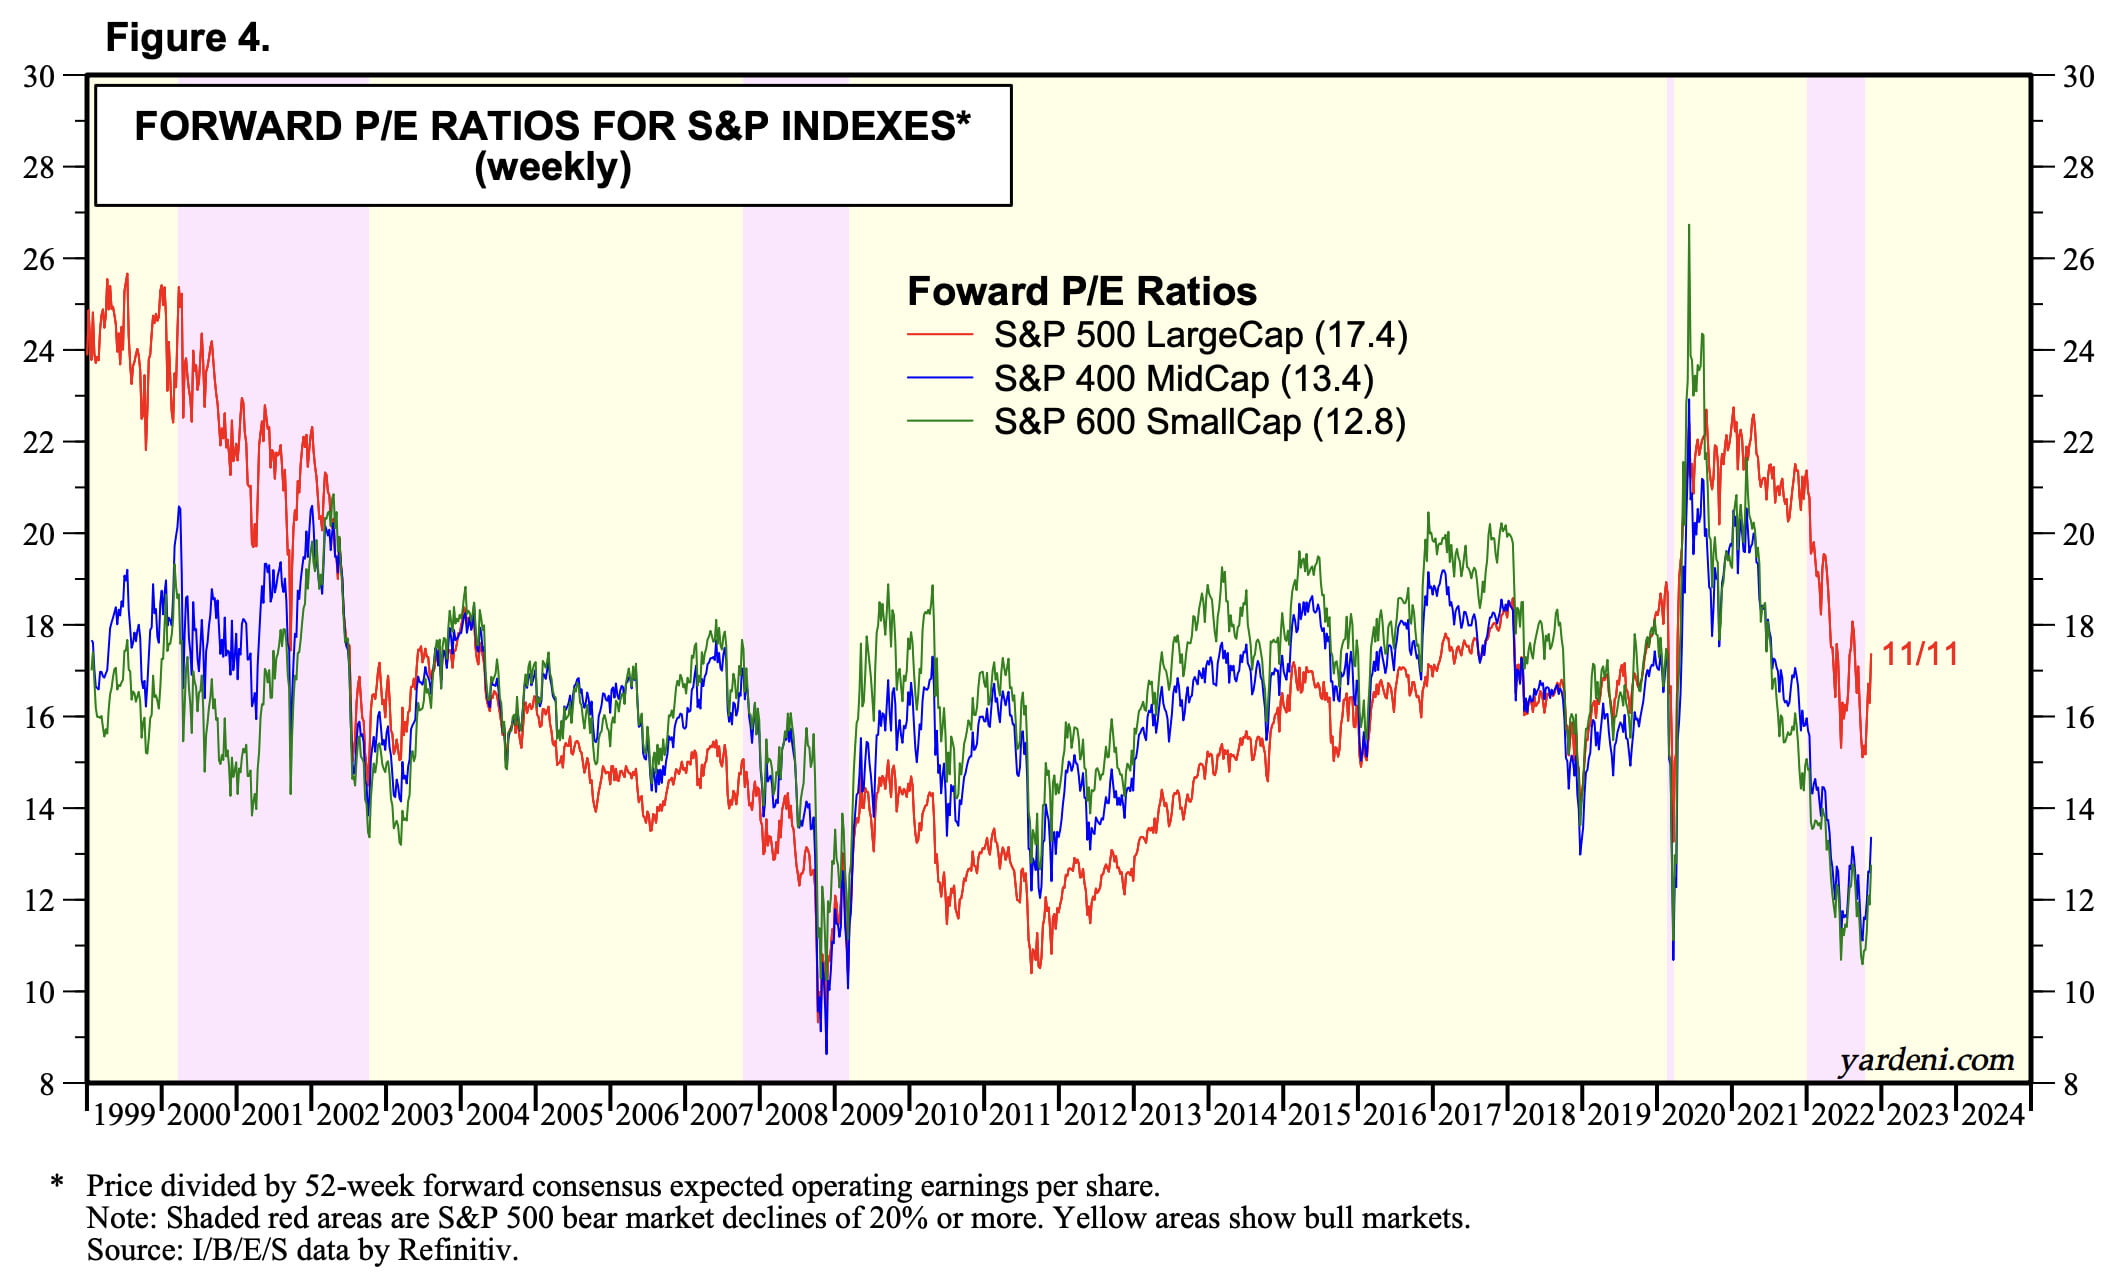 S&P 500 Forward P/E Ratios vs S&P 400 vs S&P 600